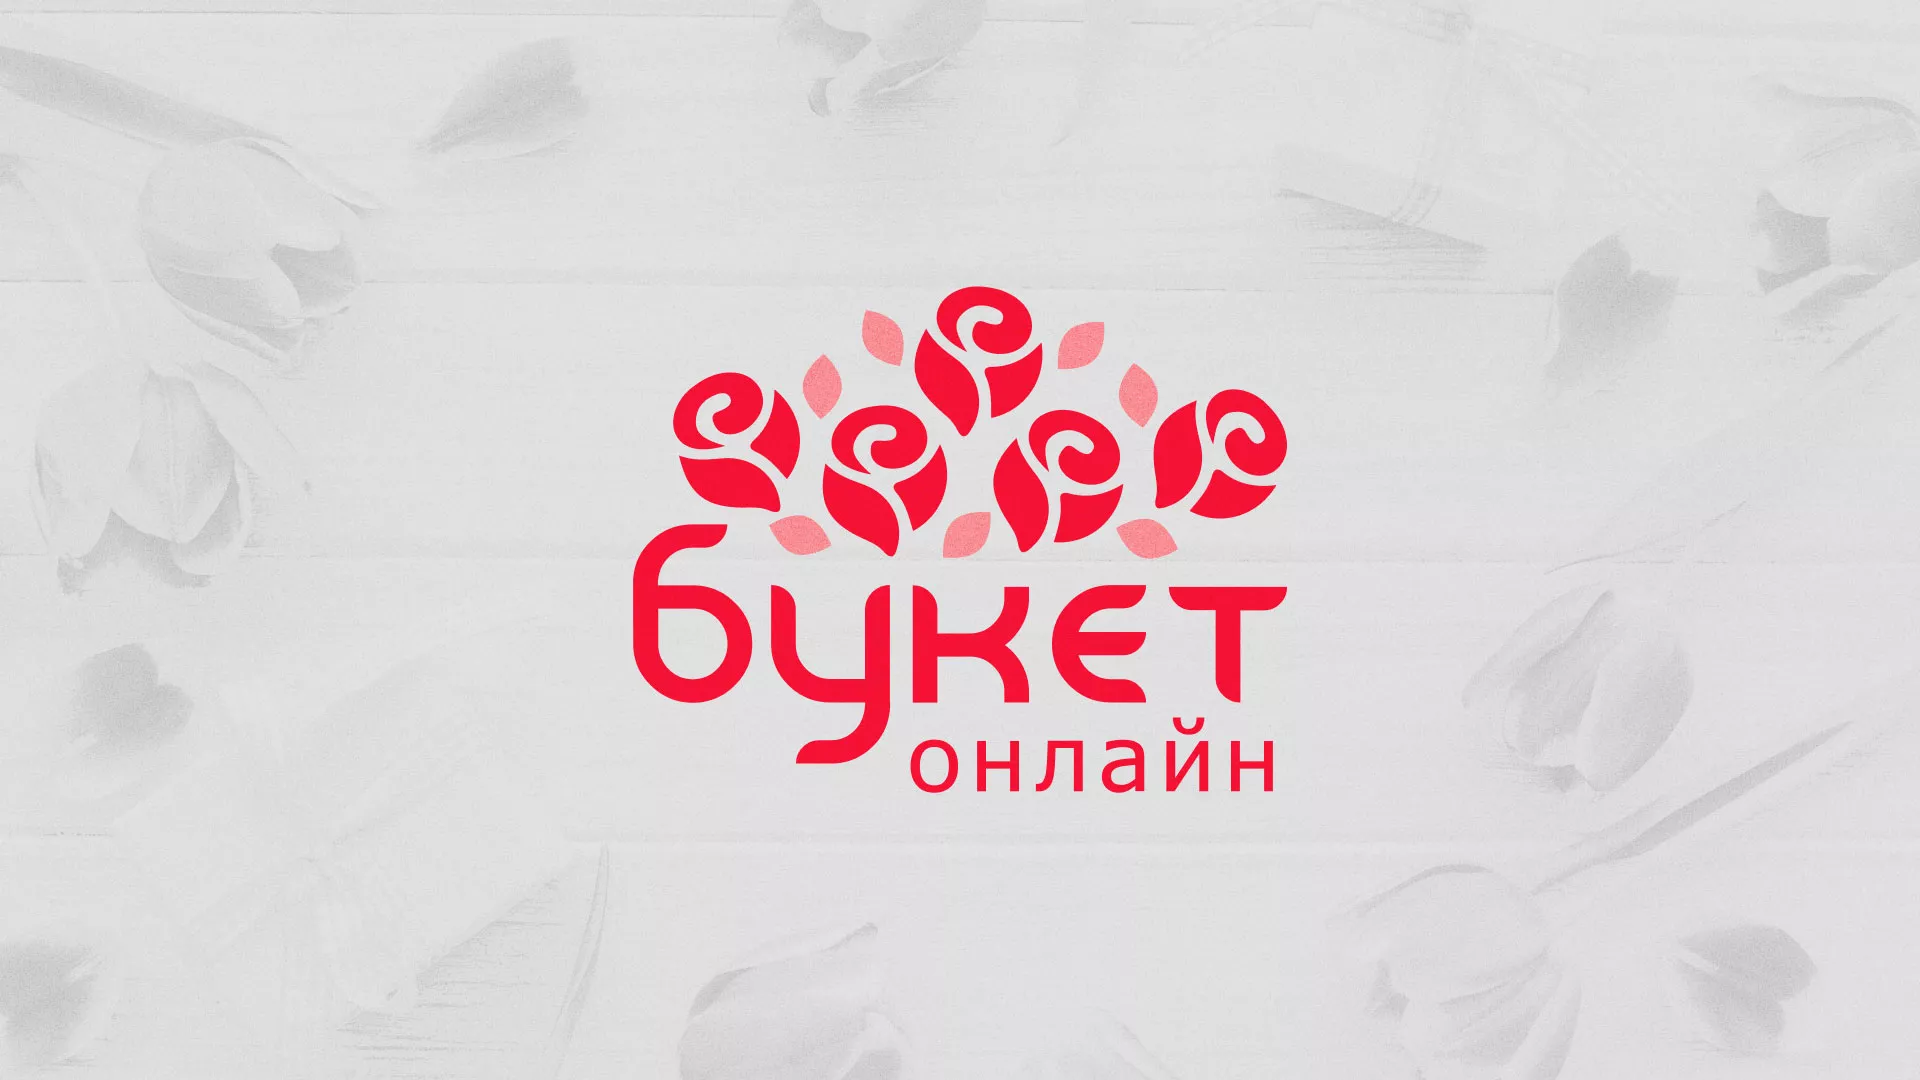 Создание интернет-магазина «Букет-онлайн» по цветам в Козловке